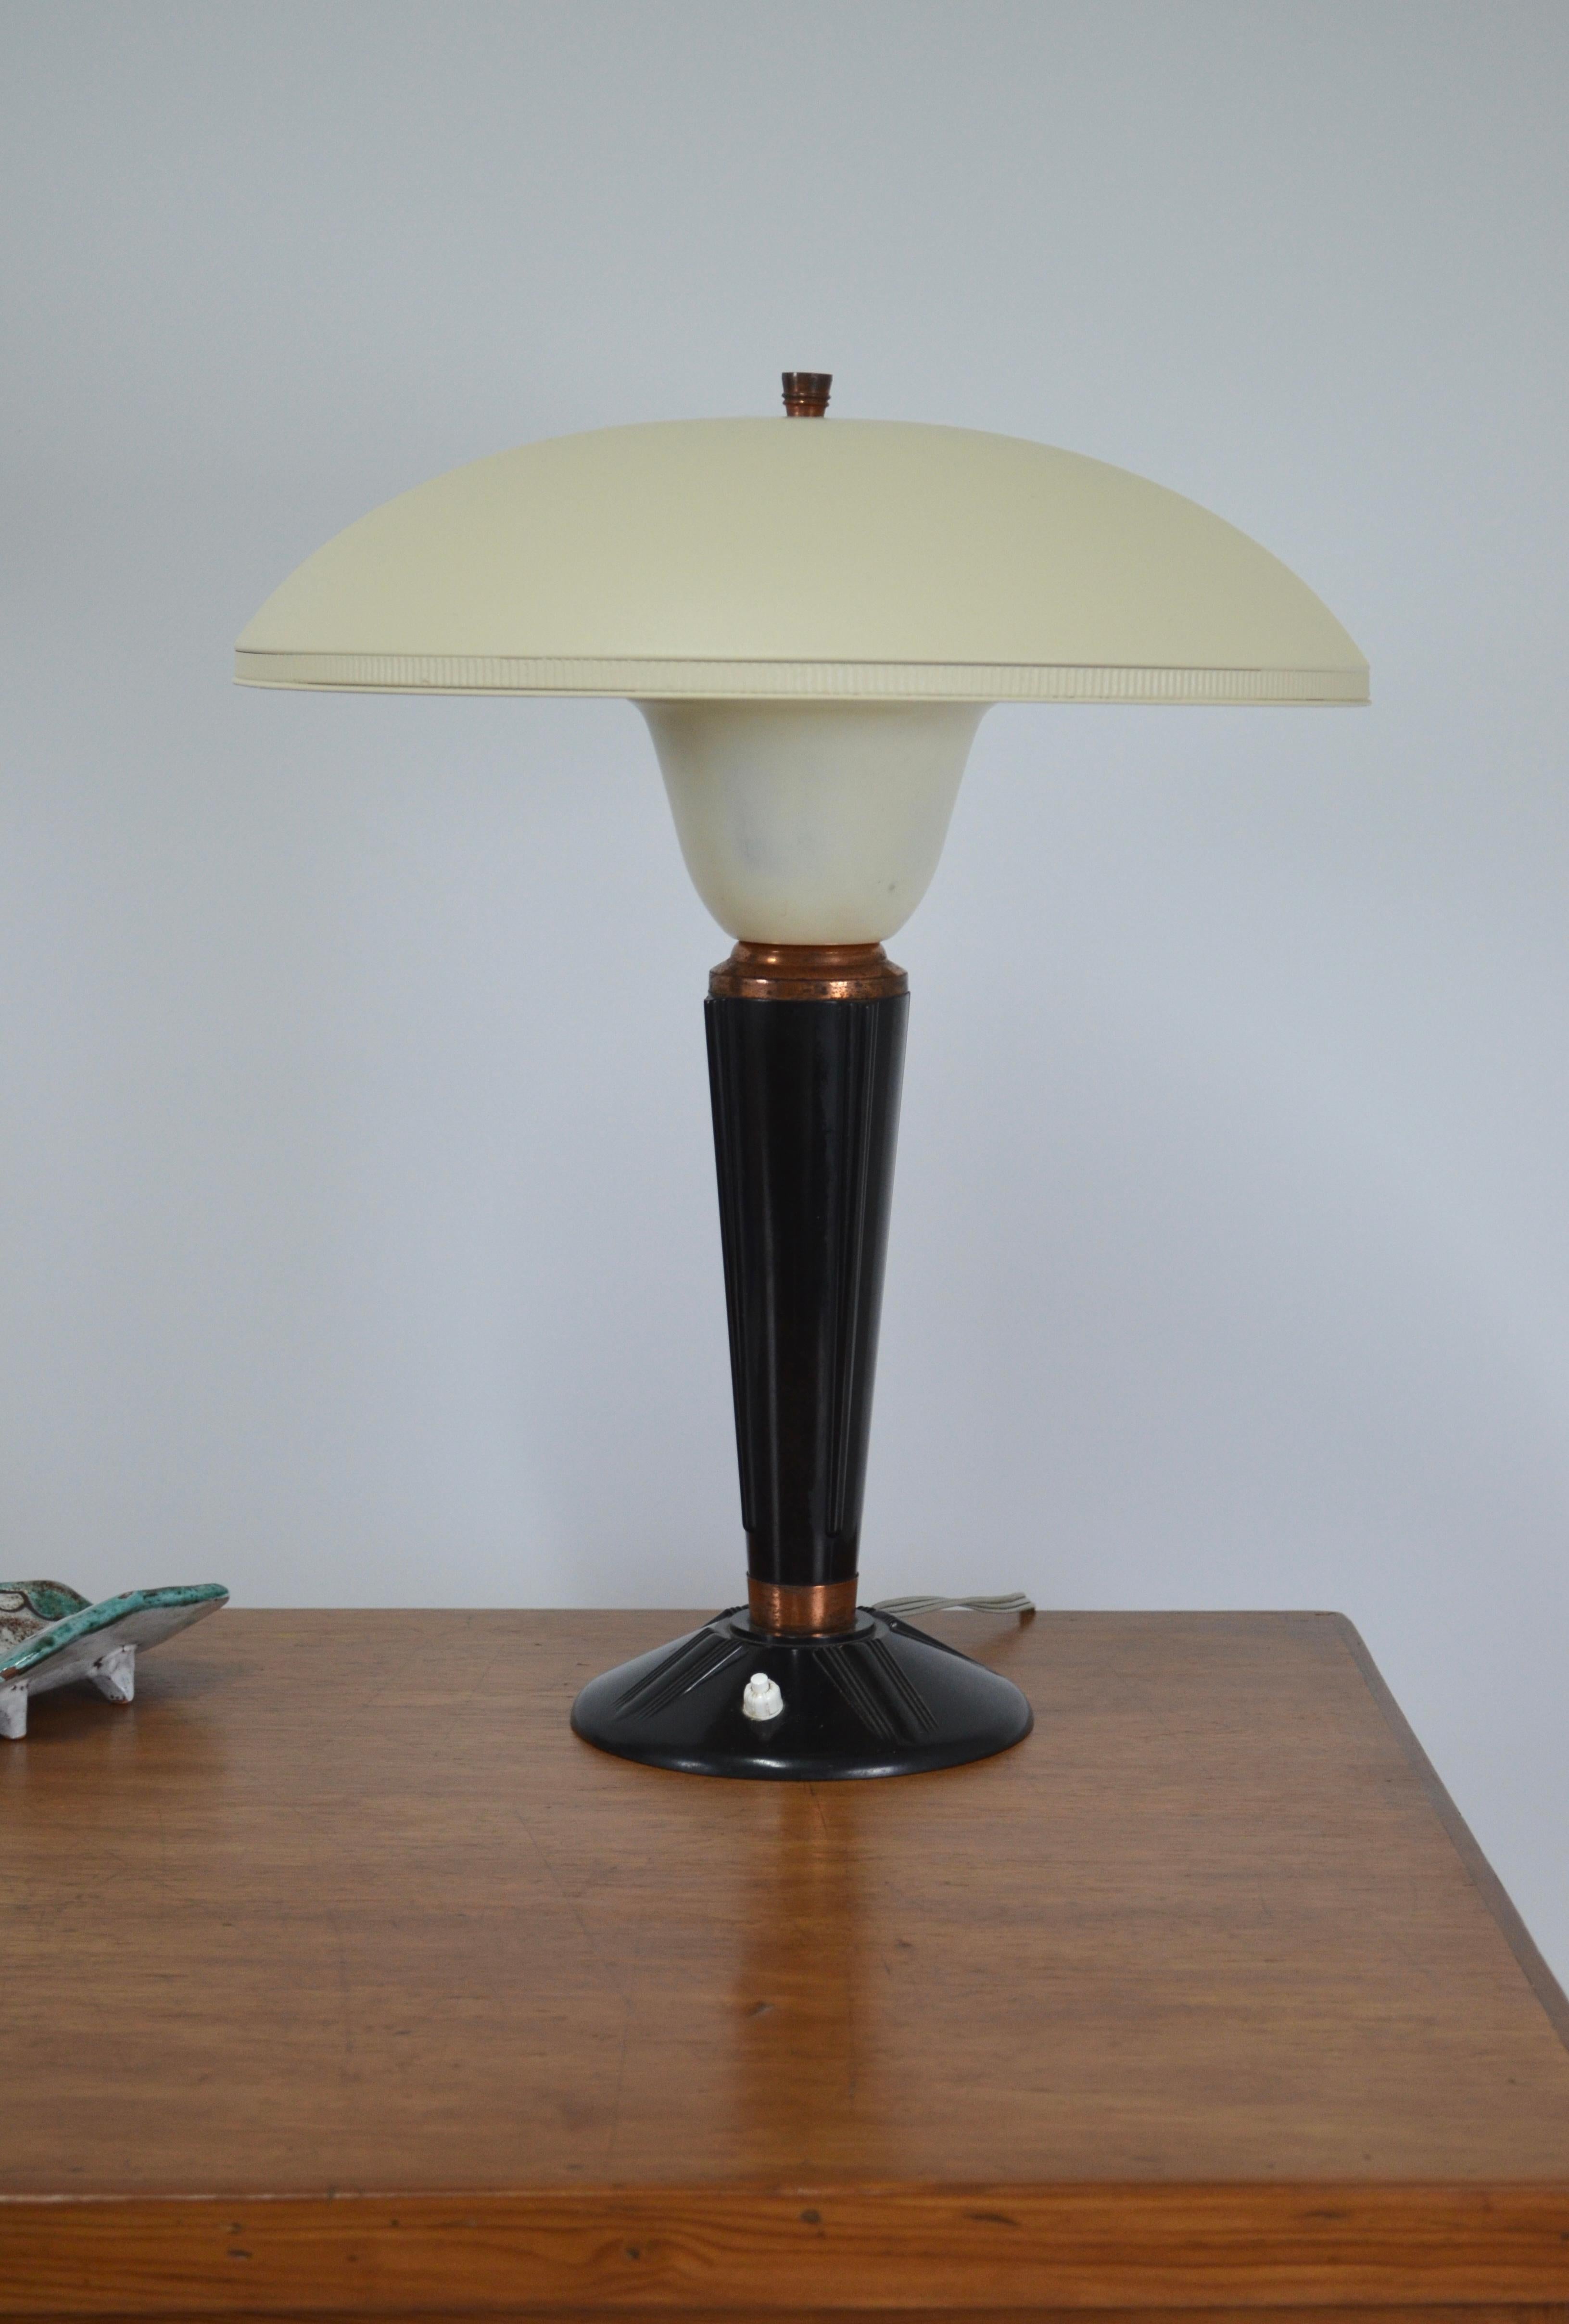 Lampe modèle 320 de Jumo, France, années 1940
Son corps est en bakélite (ancêtre du plastique) avec des anneaux en cuivre.
Le réflecteur est en métal de couleur blanc ivoire. La peinture ne semble pas être d'origine.
Belles proportions 
Lampe de